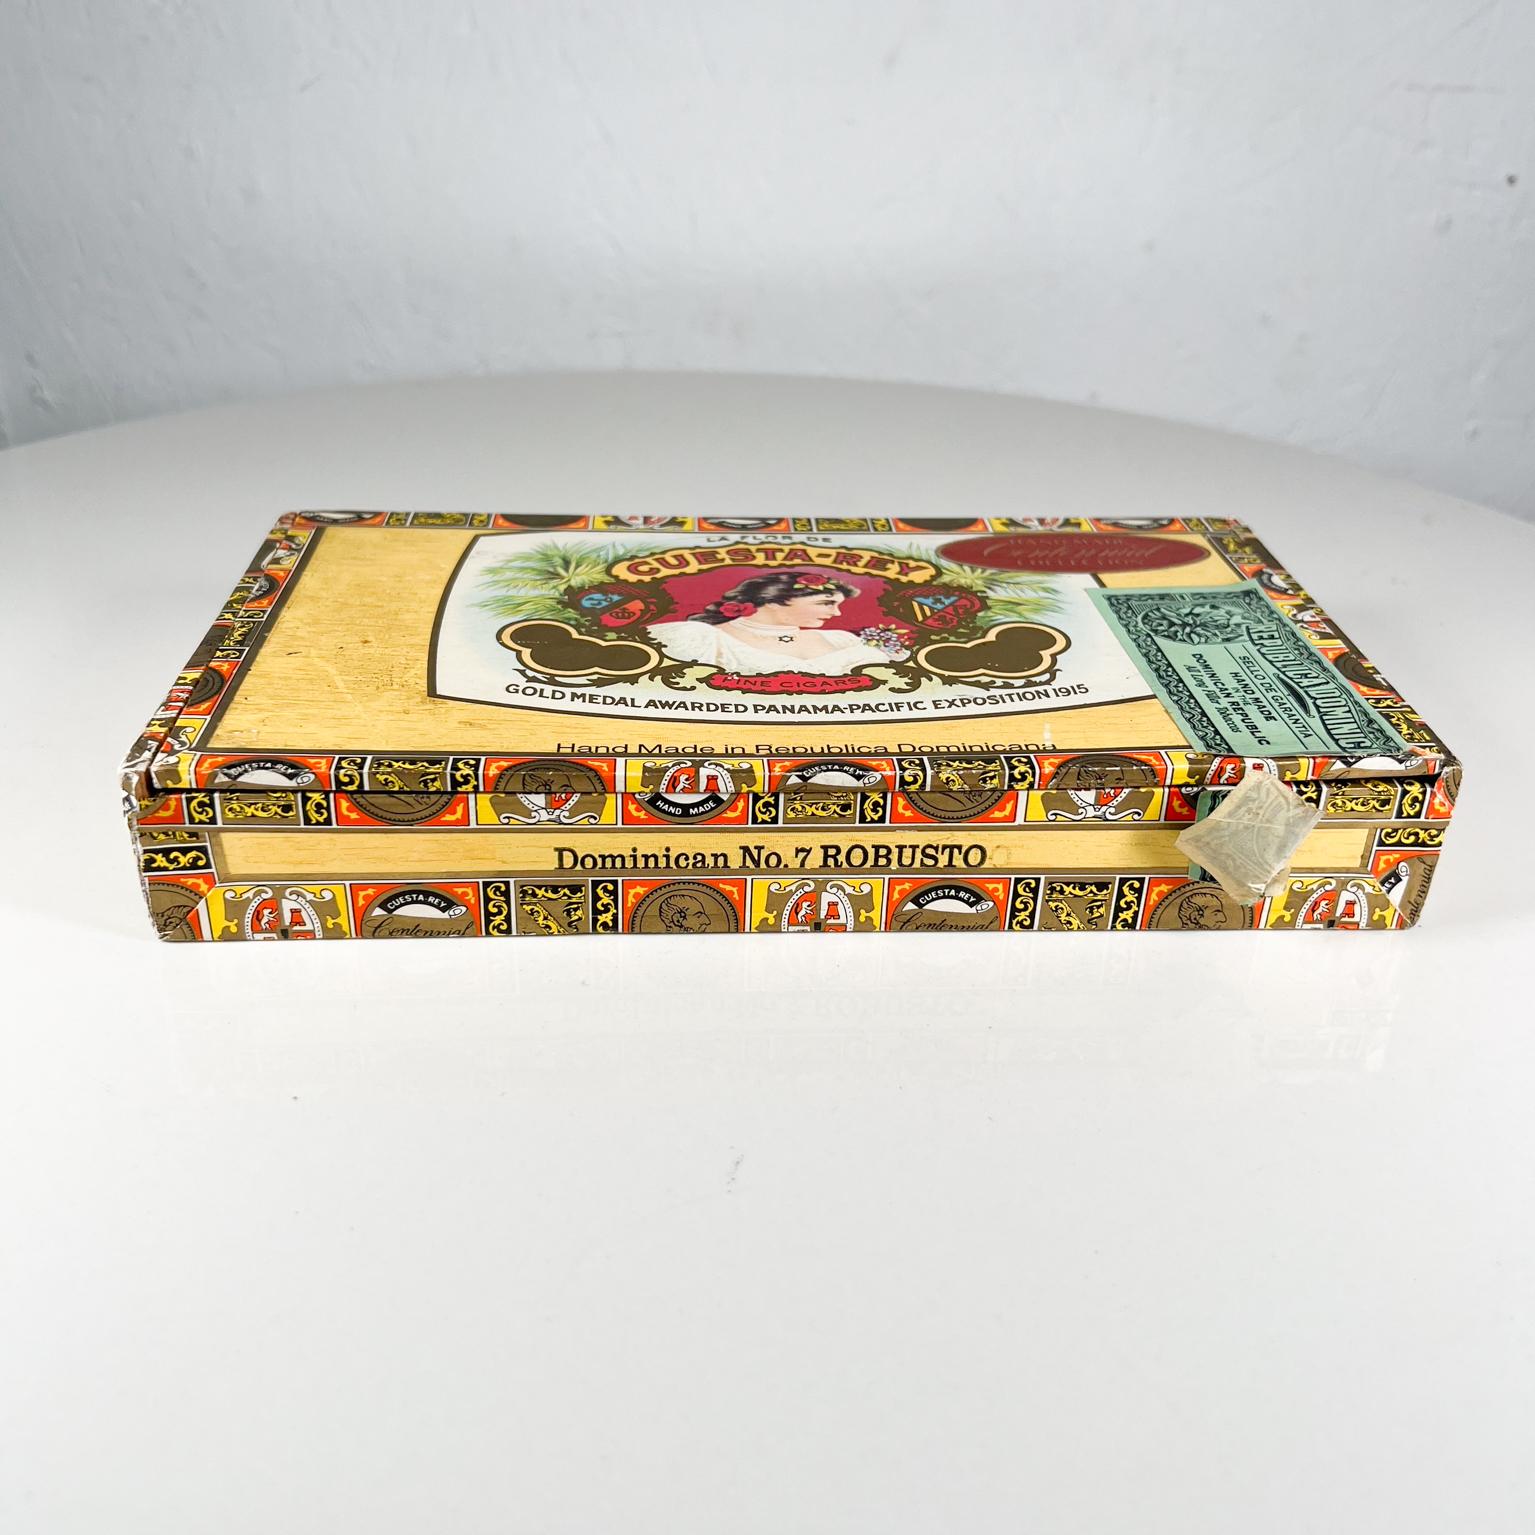 Vintage Cuesta -Rey cigar box
Cigar box Dominican no 7 Robusto
9.25 w x 5.13 x 1.38
Original vintage condition.
See images provided.
 